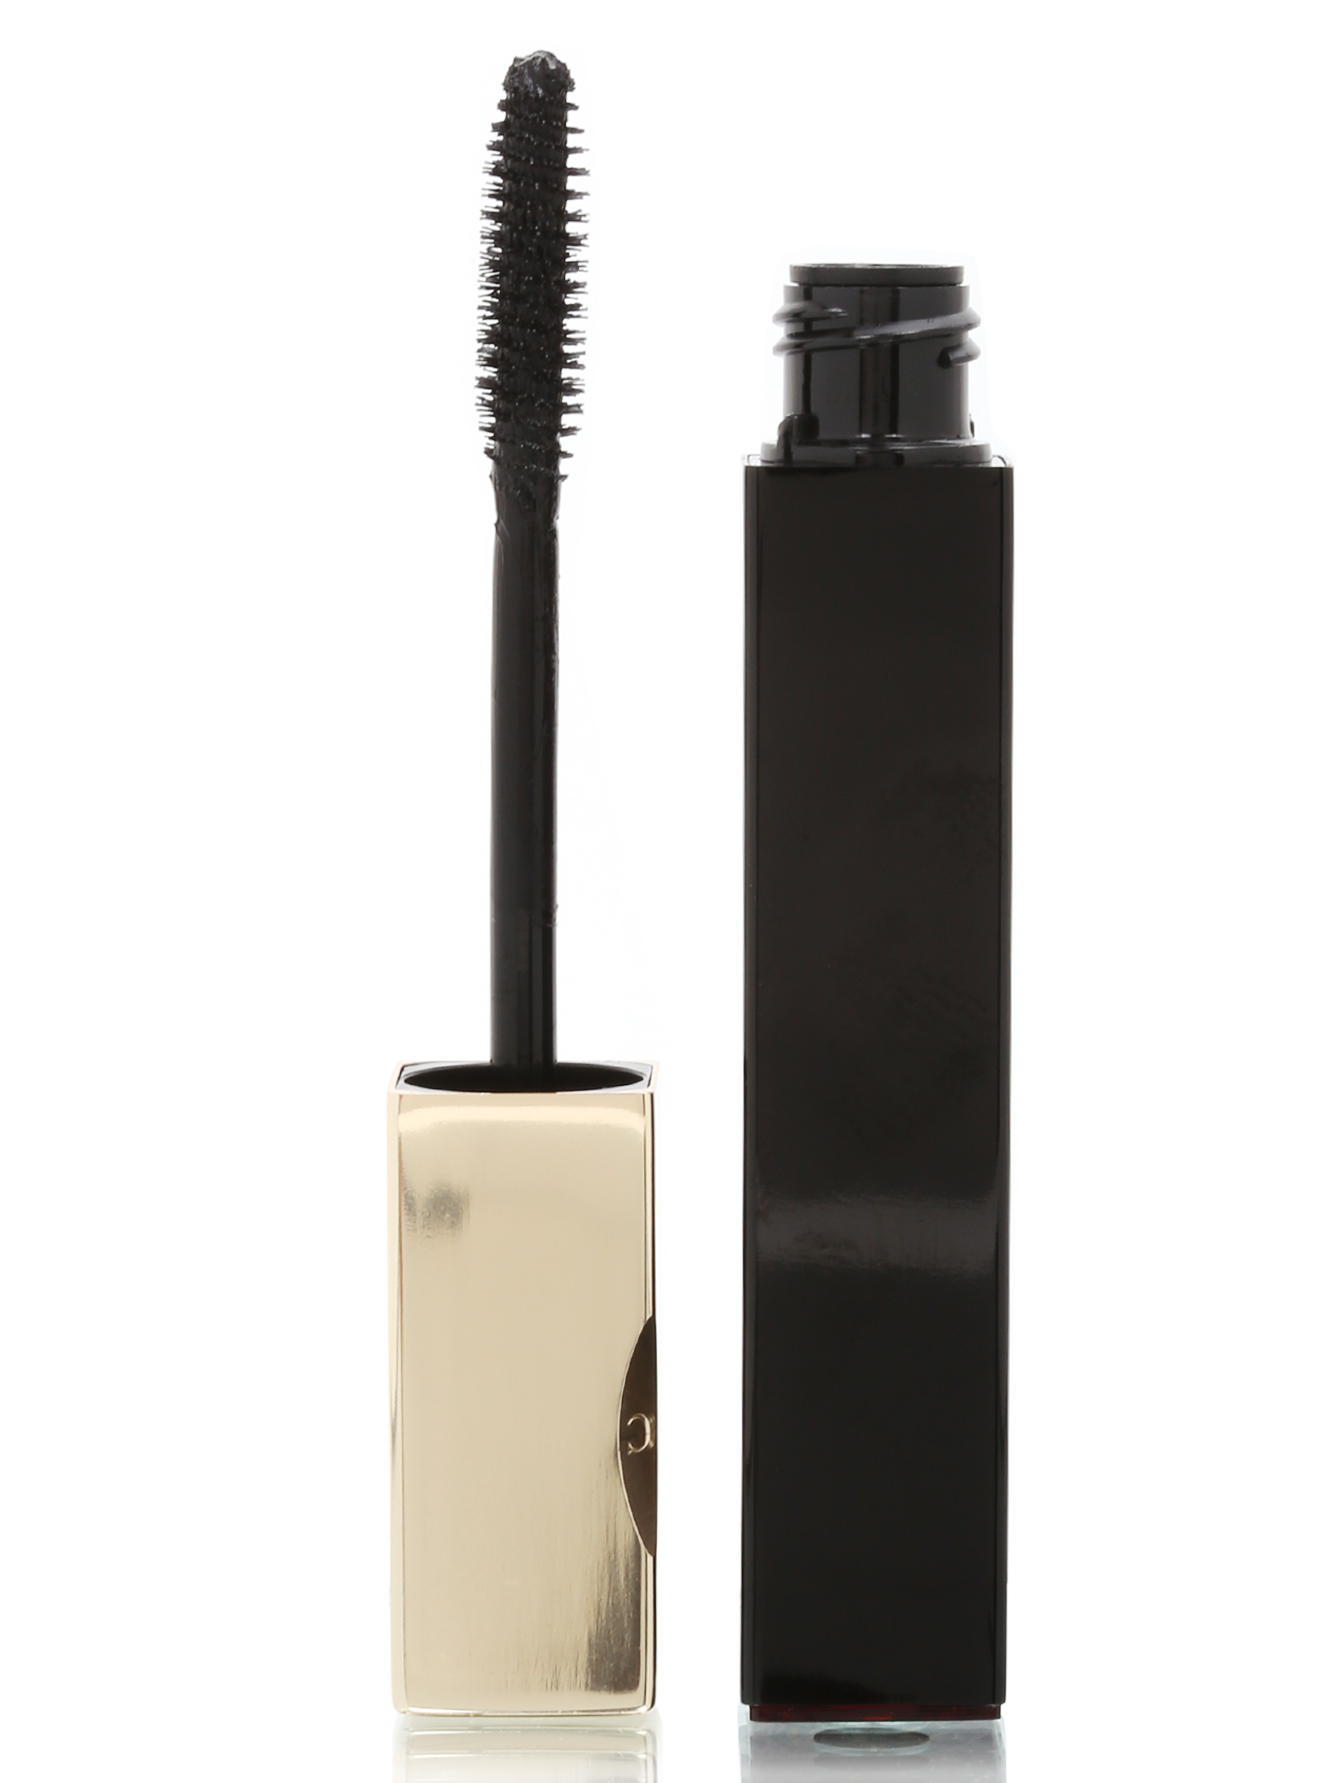  Водостойкая тушь для ресниц - №01 Black, Truly Waterproof Mascara, 7ml - Общий вид